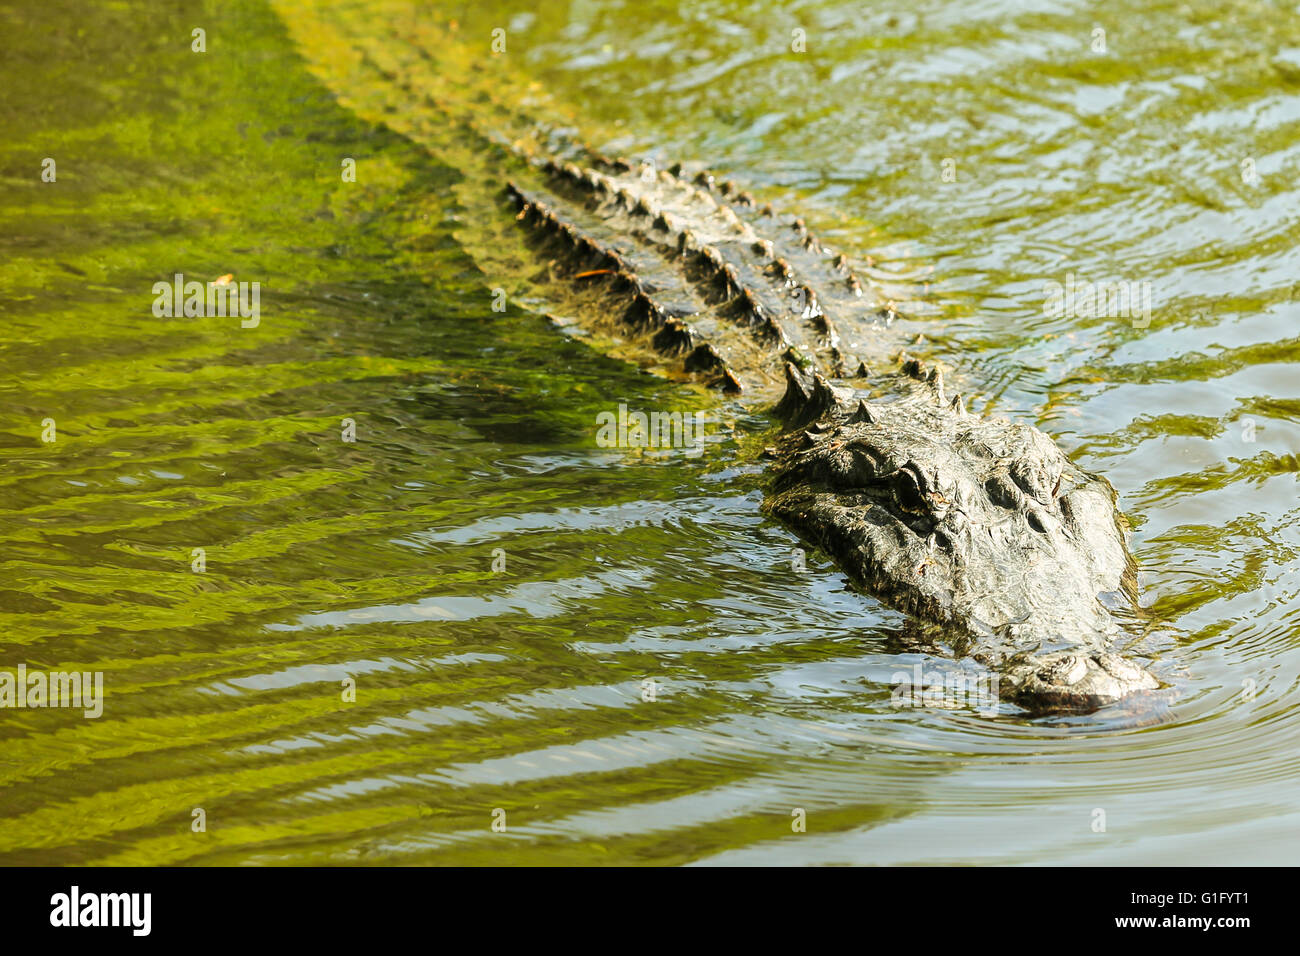 En un cocodrilo de pantano louisana Foto de stock